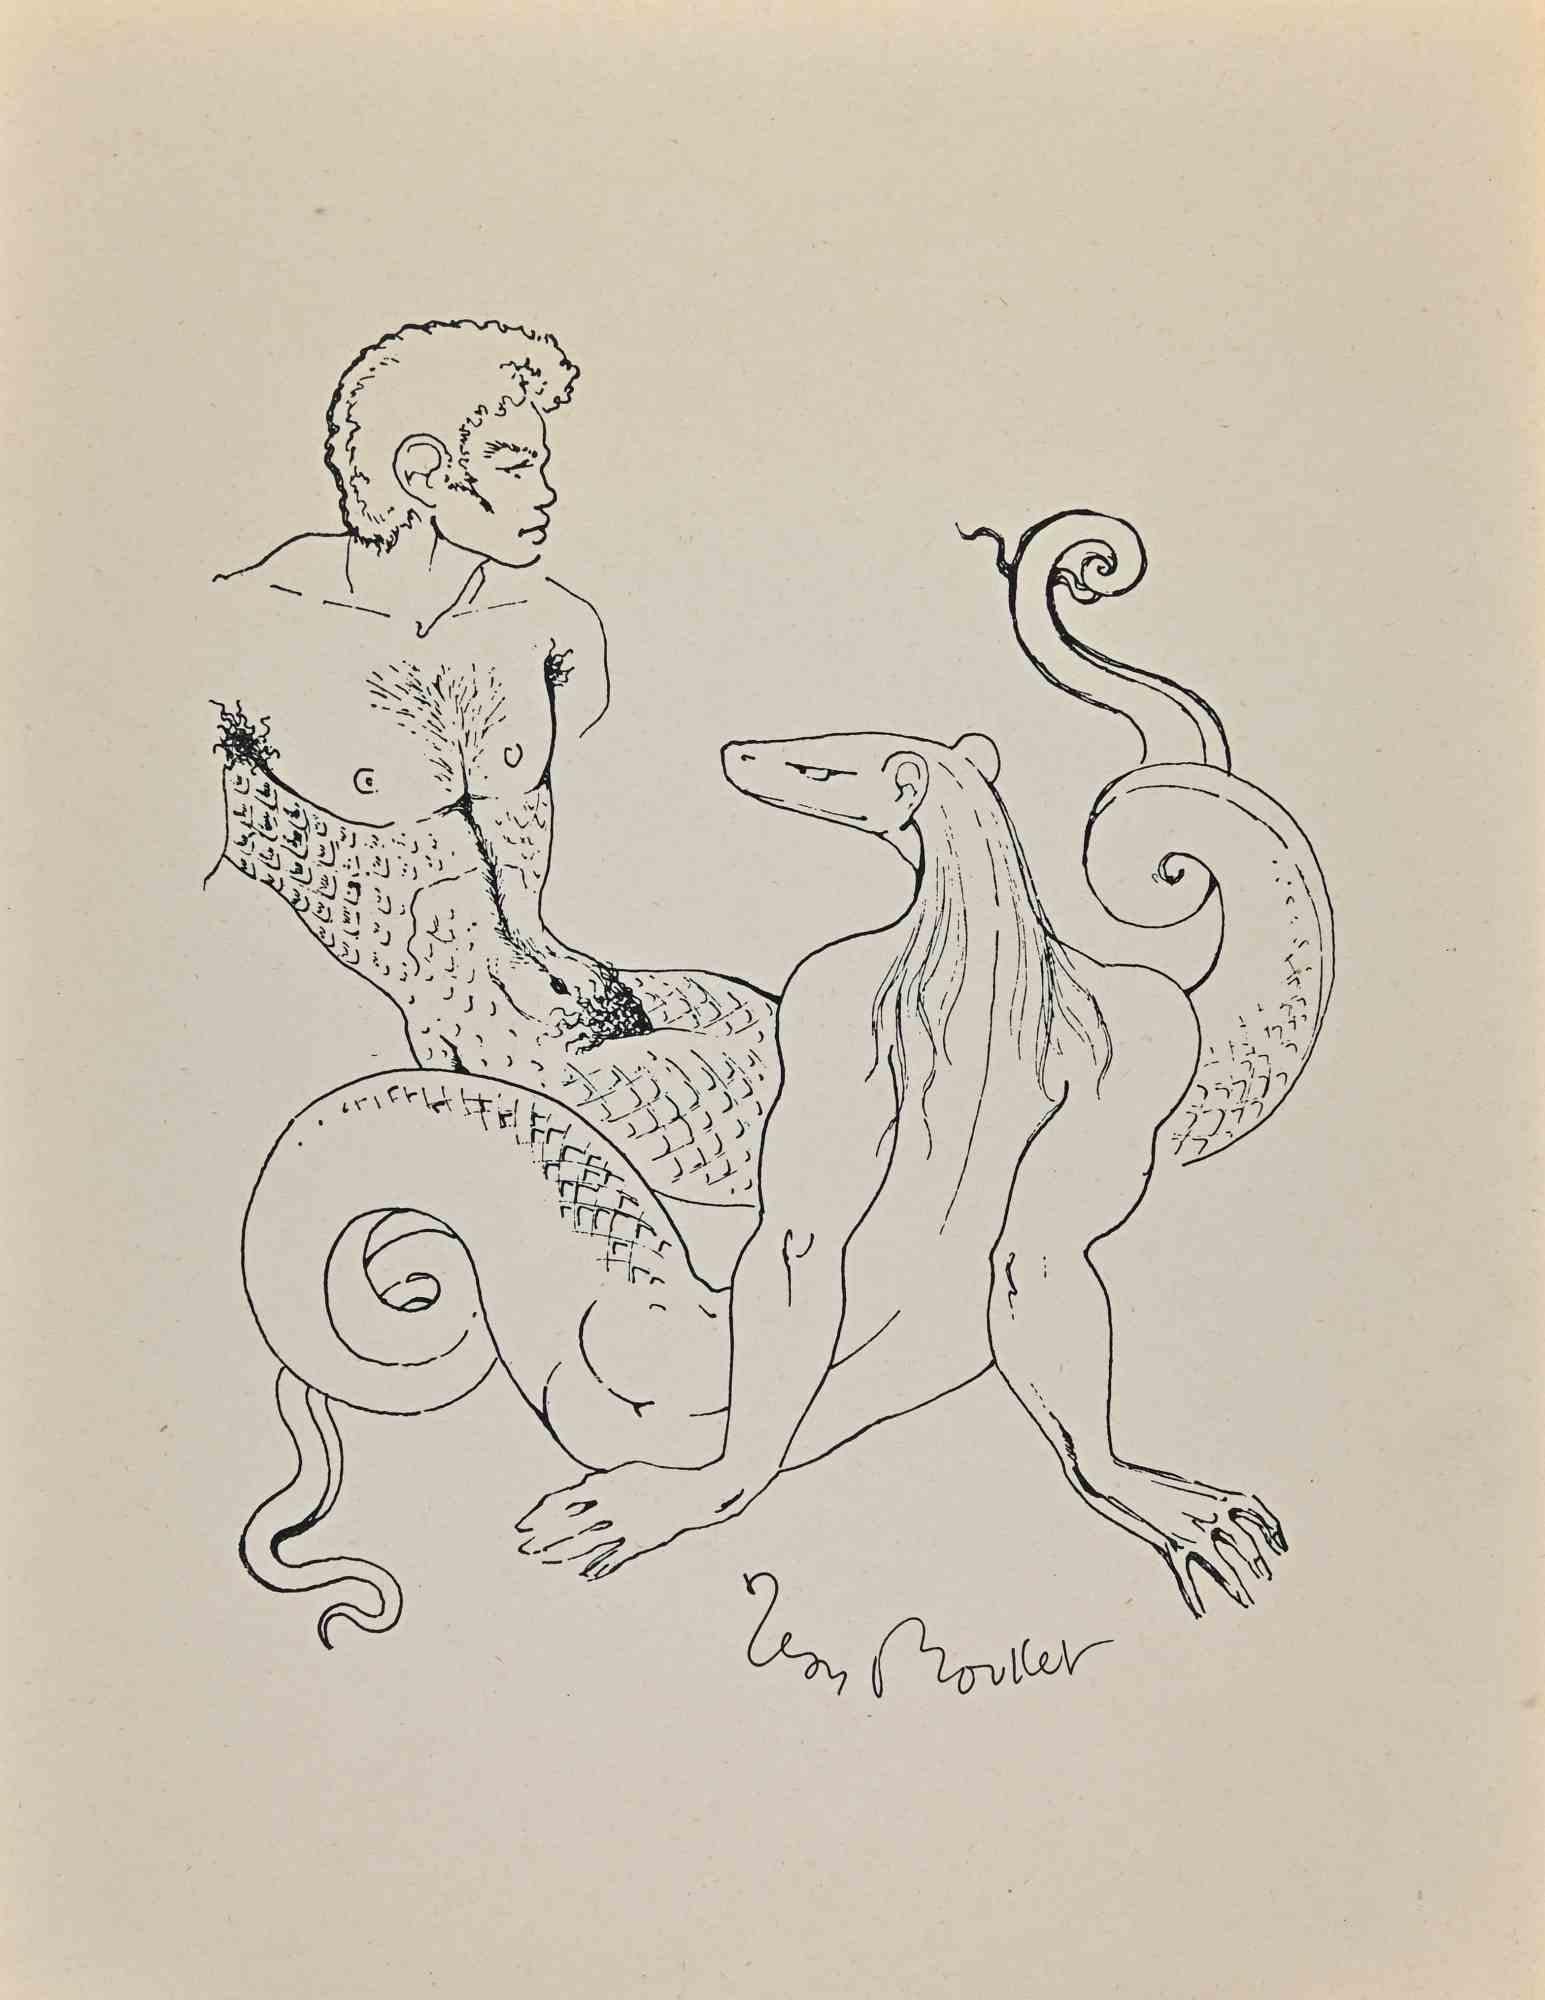 Metamorphosis ist eine Original-Lithografie, die in den 1950er Jahren von Leon Boullet (1921-1970) geschaffen wurde.

Gute Bedingungen.

Signiert auf der Platte.

Das Kunstwerk wird mit kräftigen Strichen in einer ausgewogenen Komposition